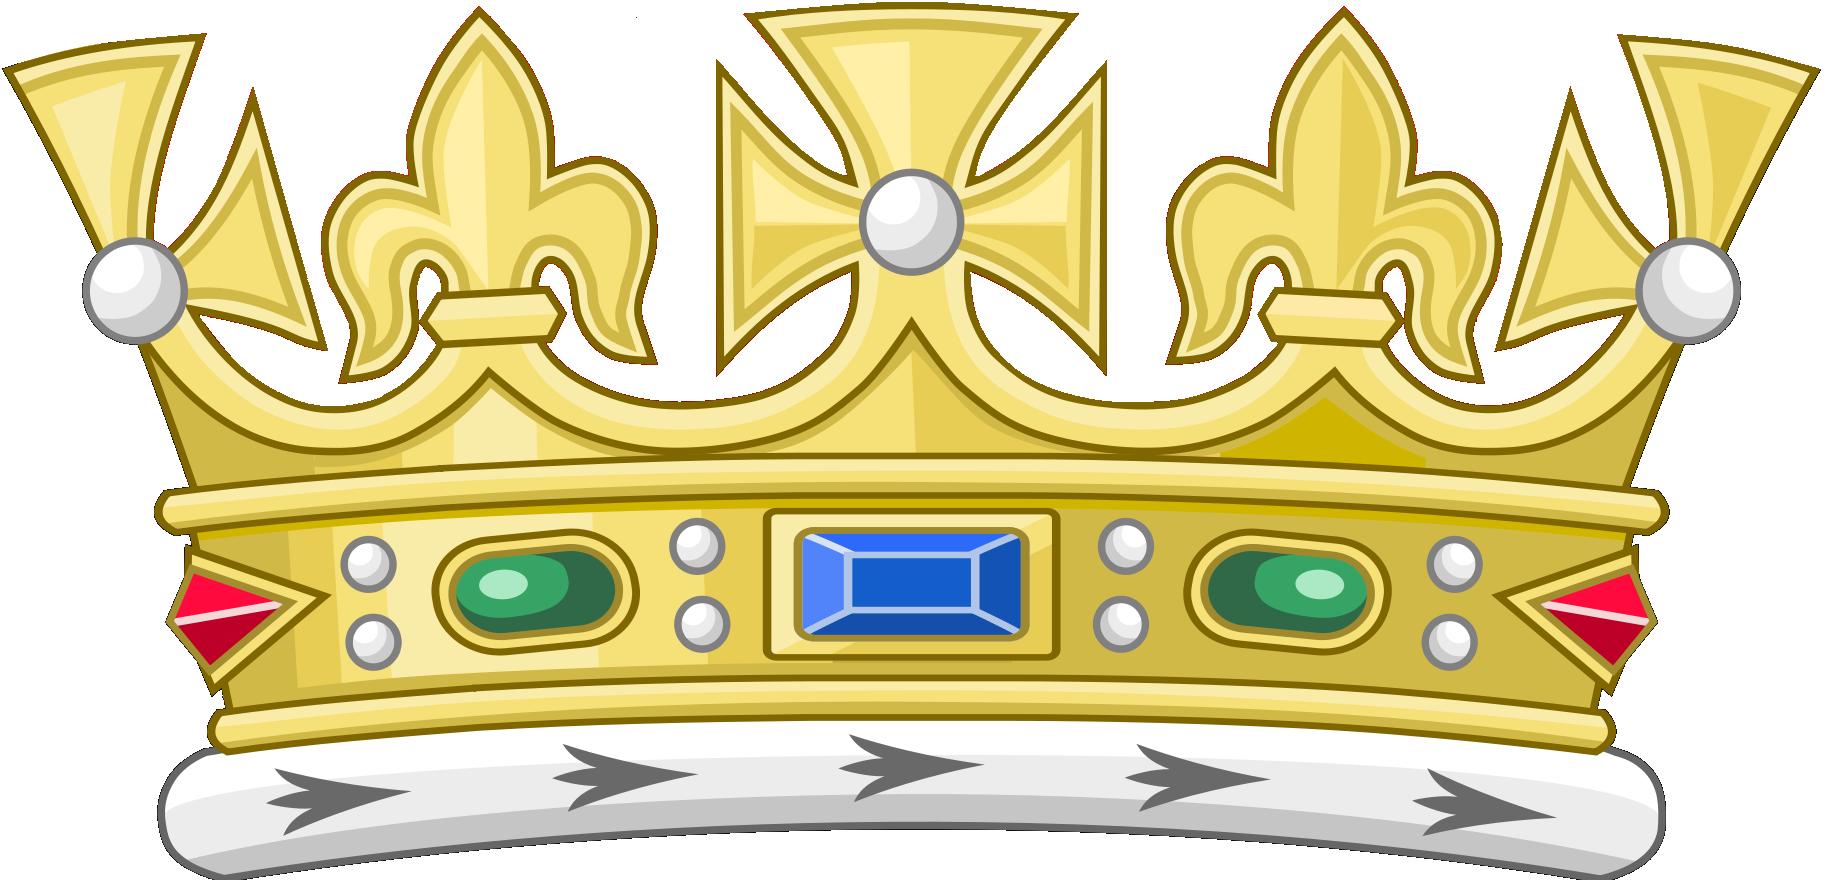 File:Open st. edward's crown.jpg - Wikipedia, the free encyclopedia